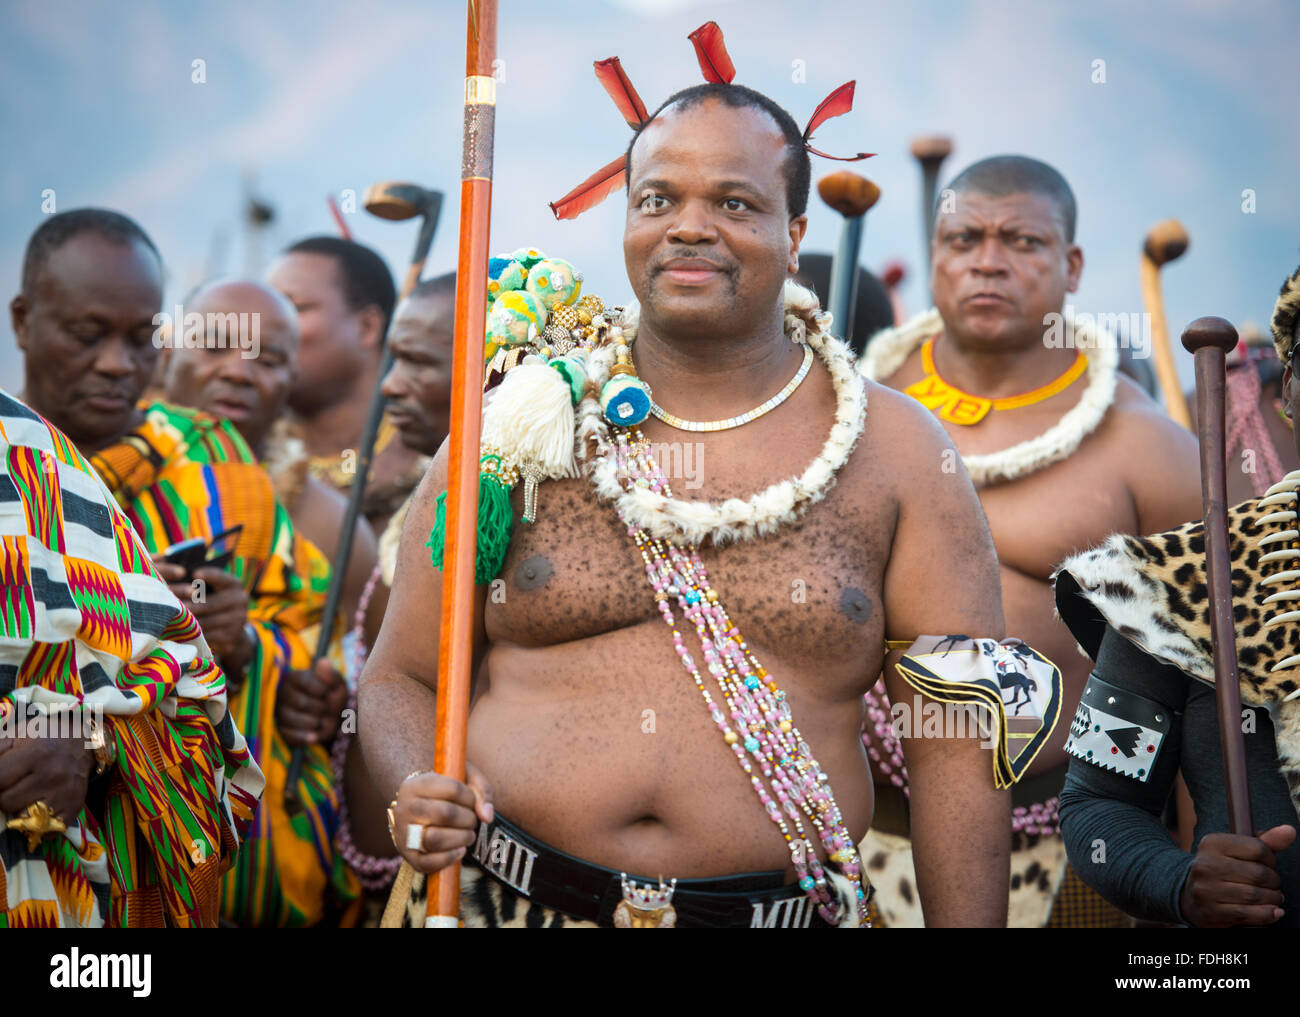 Ludzidzini, Swasiland, Afrika - König Mswati III von Swasiland bei der jährlichen Umhlanga oder Reed dance Zeremonie. Mswati III ich Stockfoto